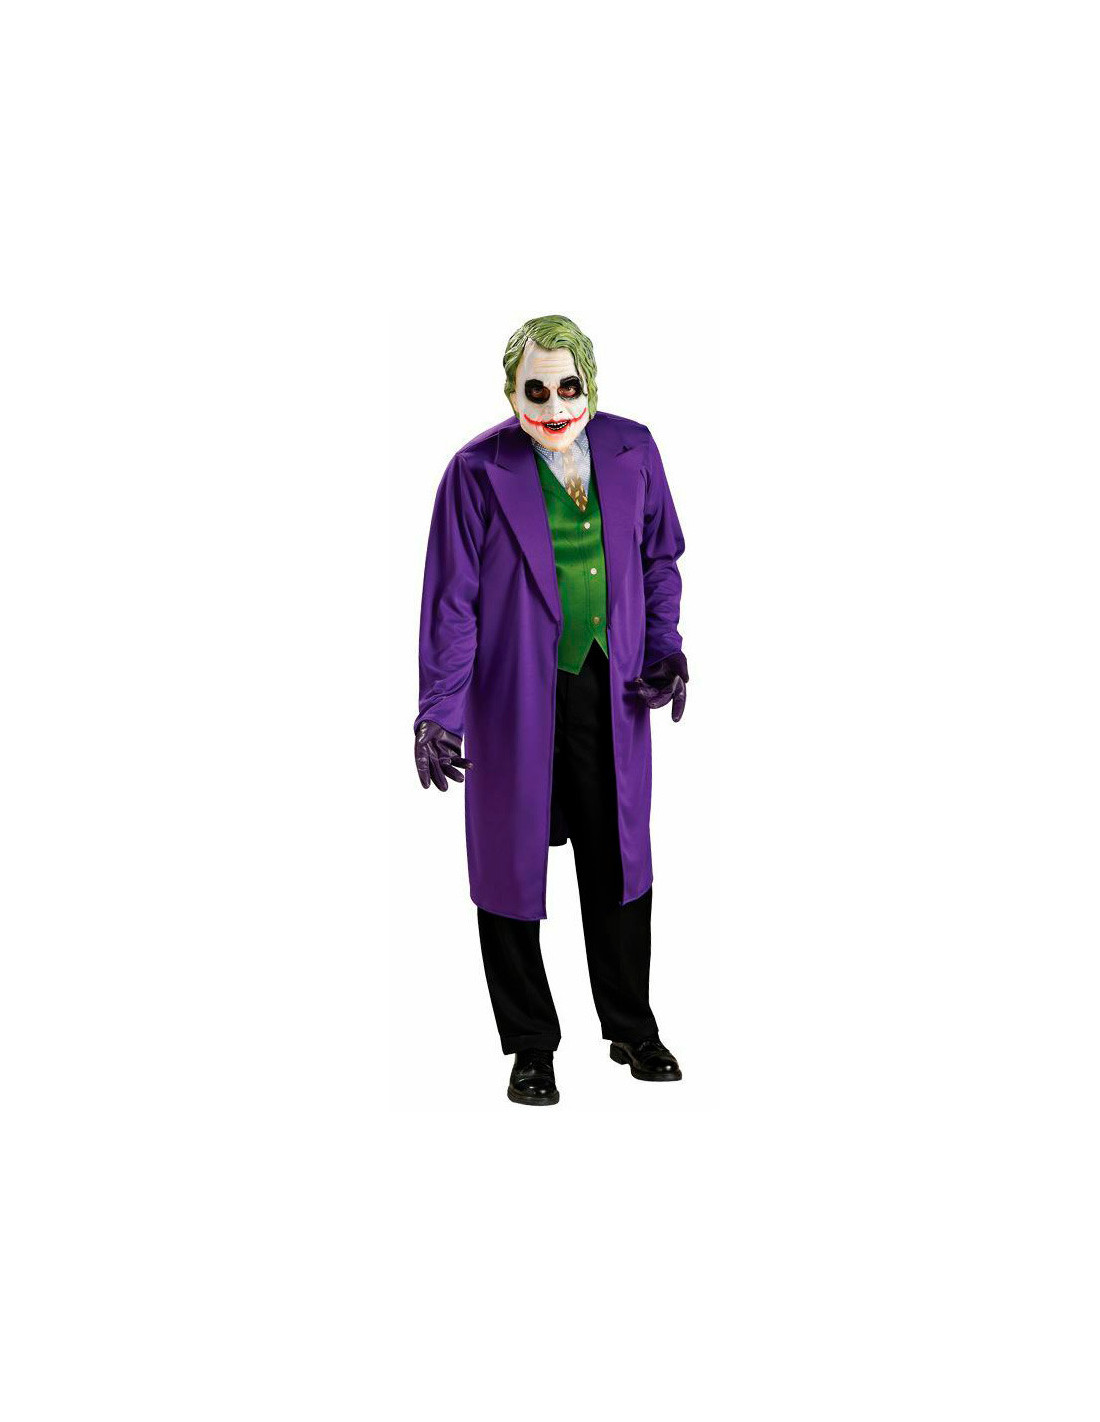 The Joker - Máscara para adulto 3/4 con pelo oficial de Batman